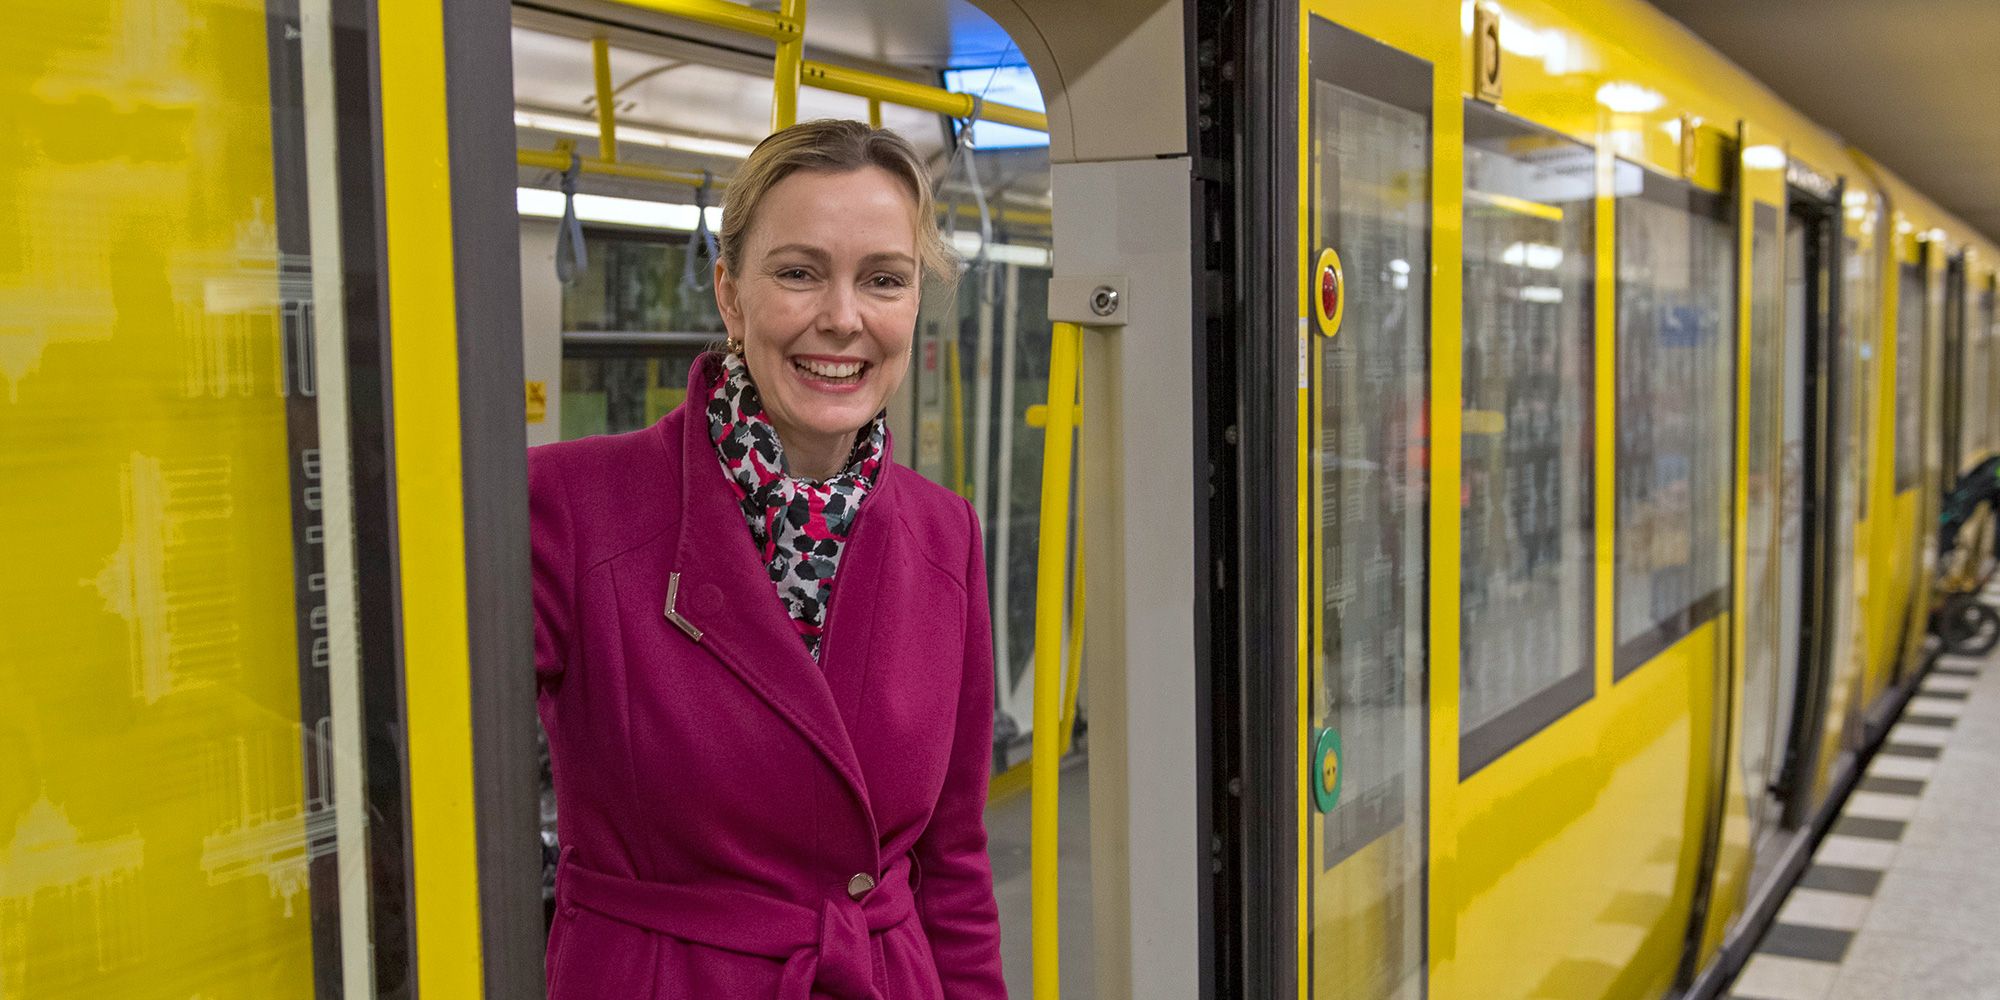 Senatorin Manja Schreiner in der U-Bahn